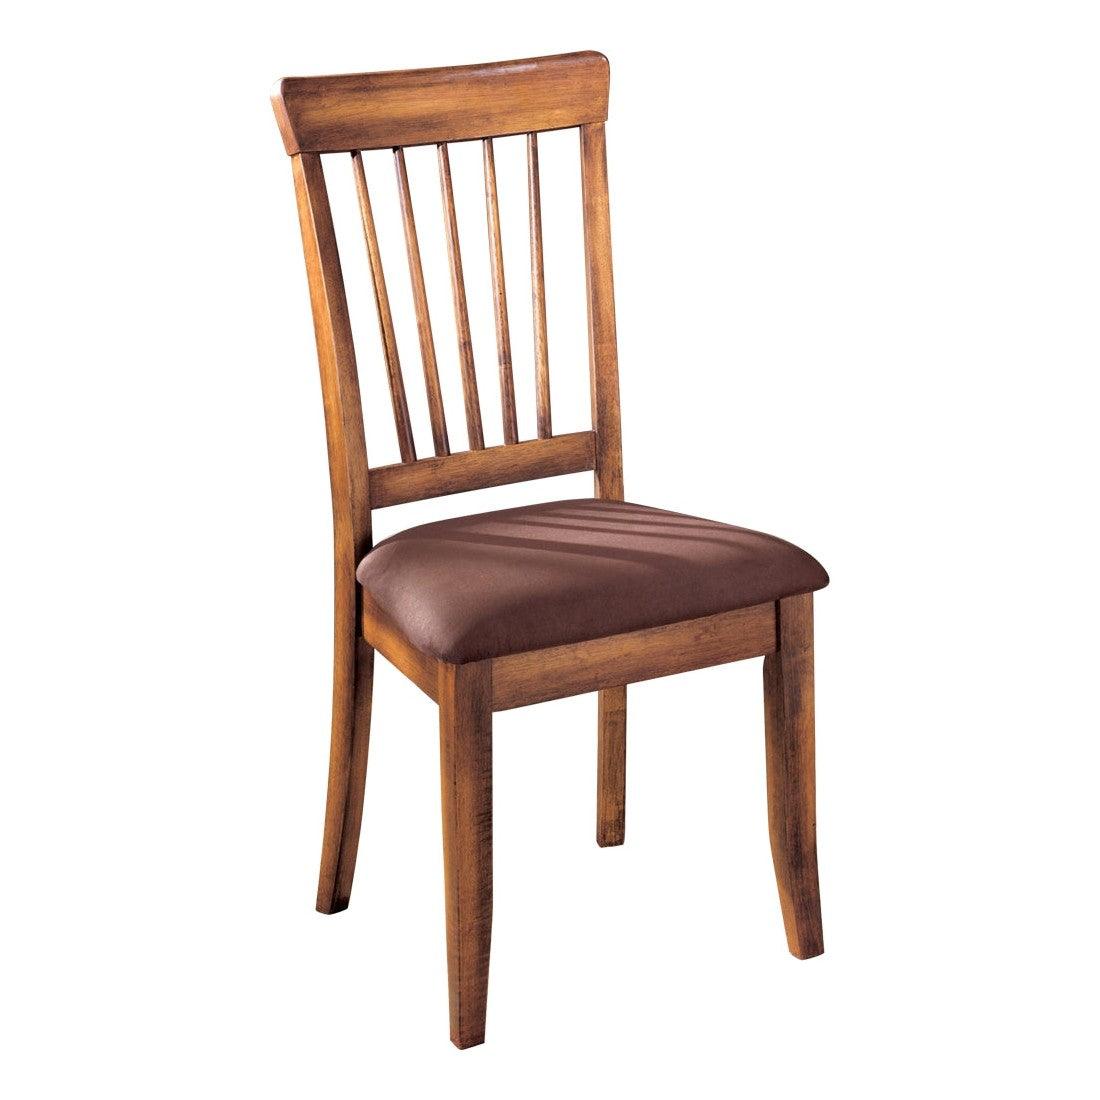 Berringer Dining Chair Ash-D199-01